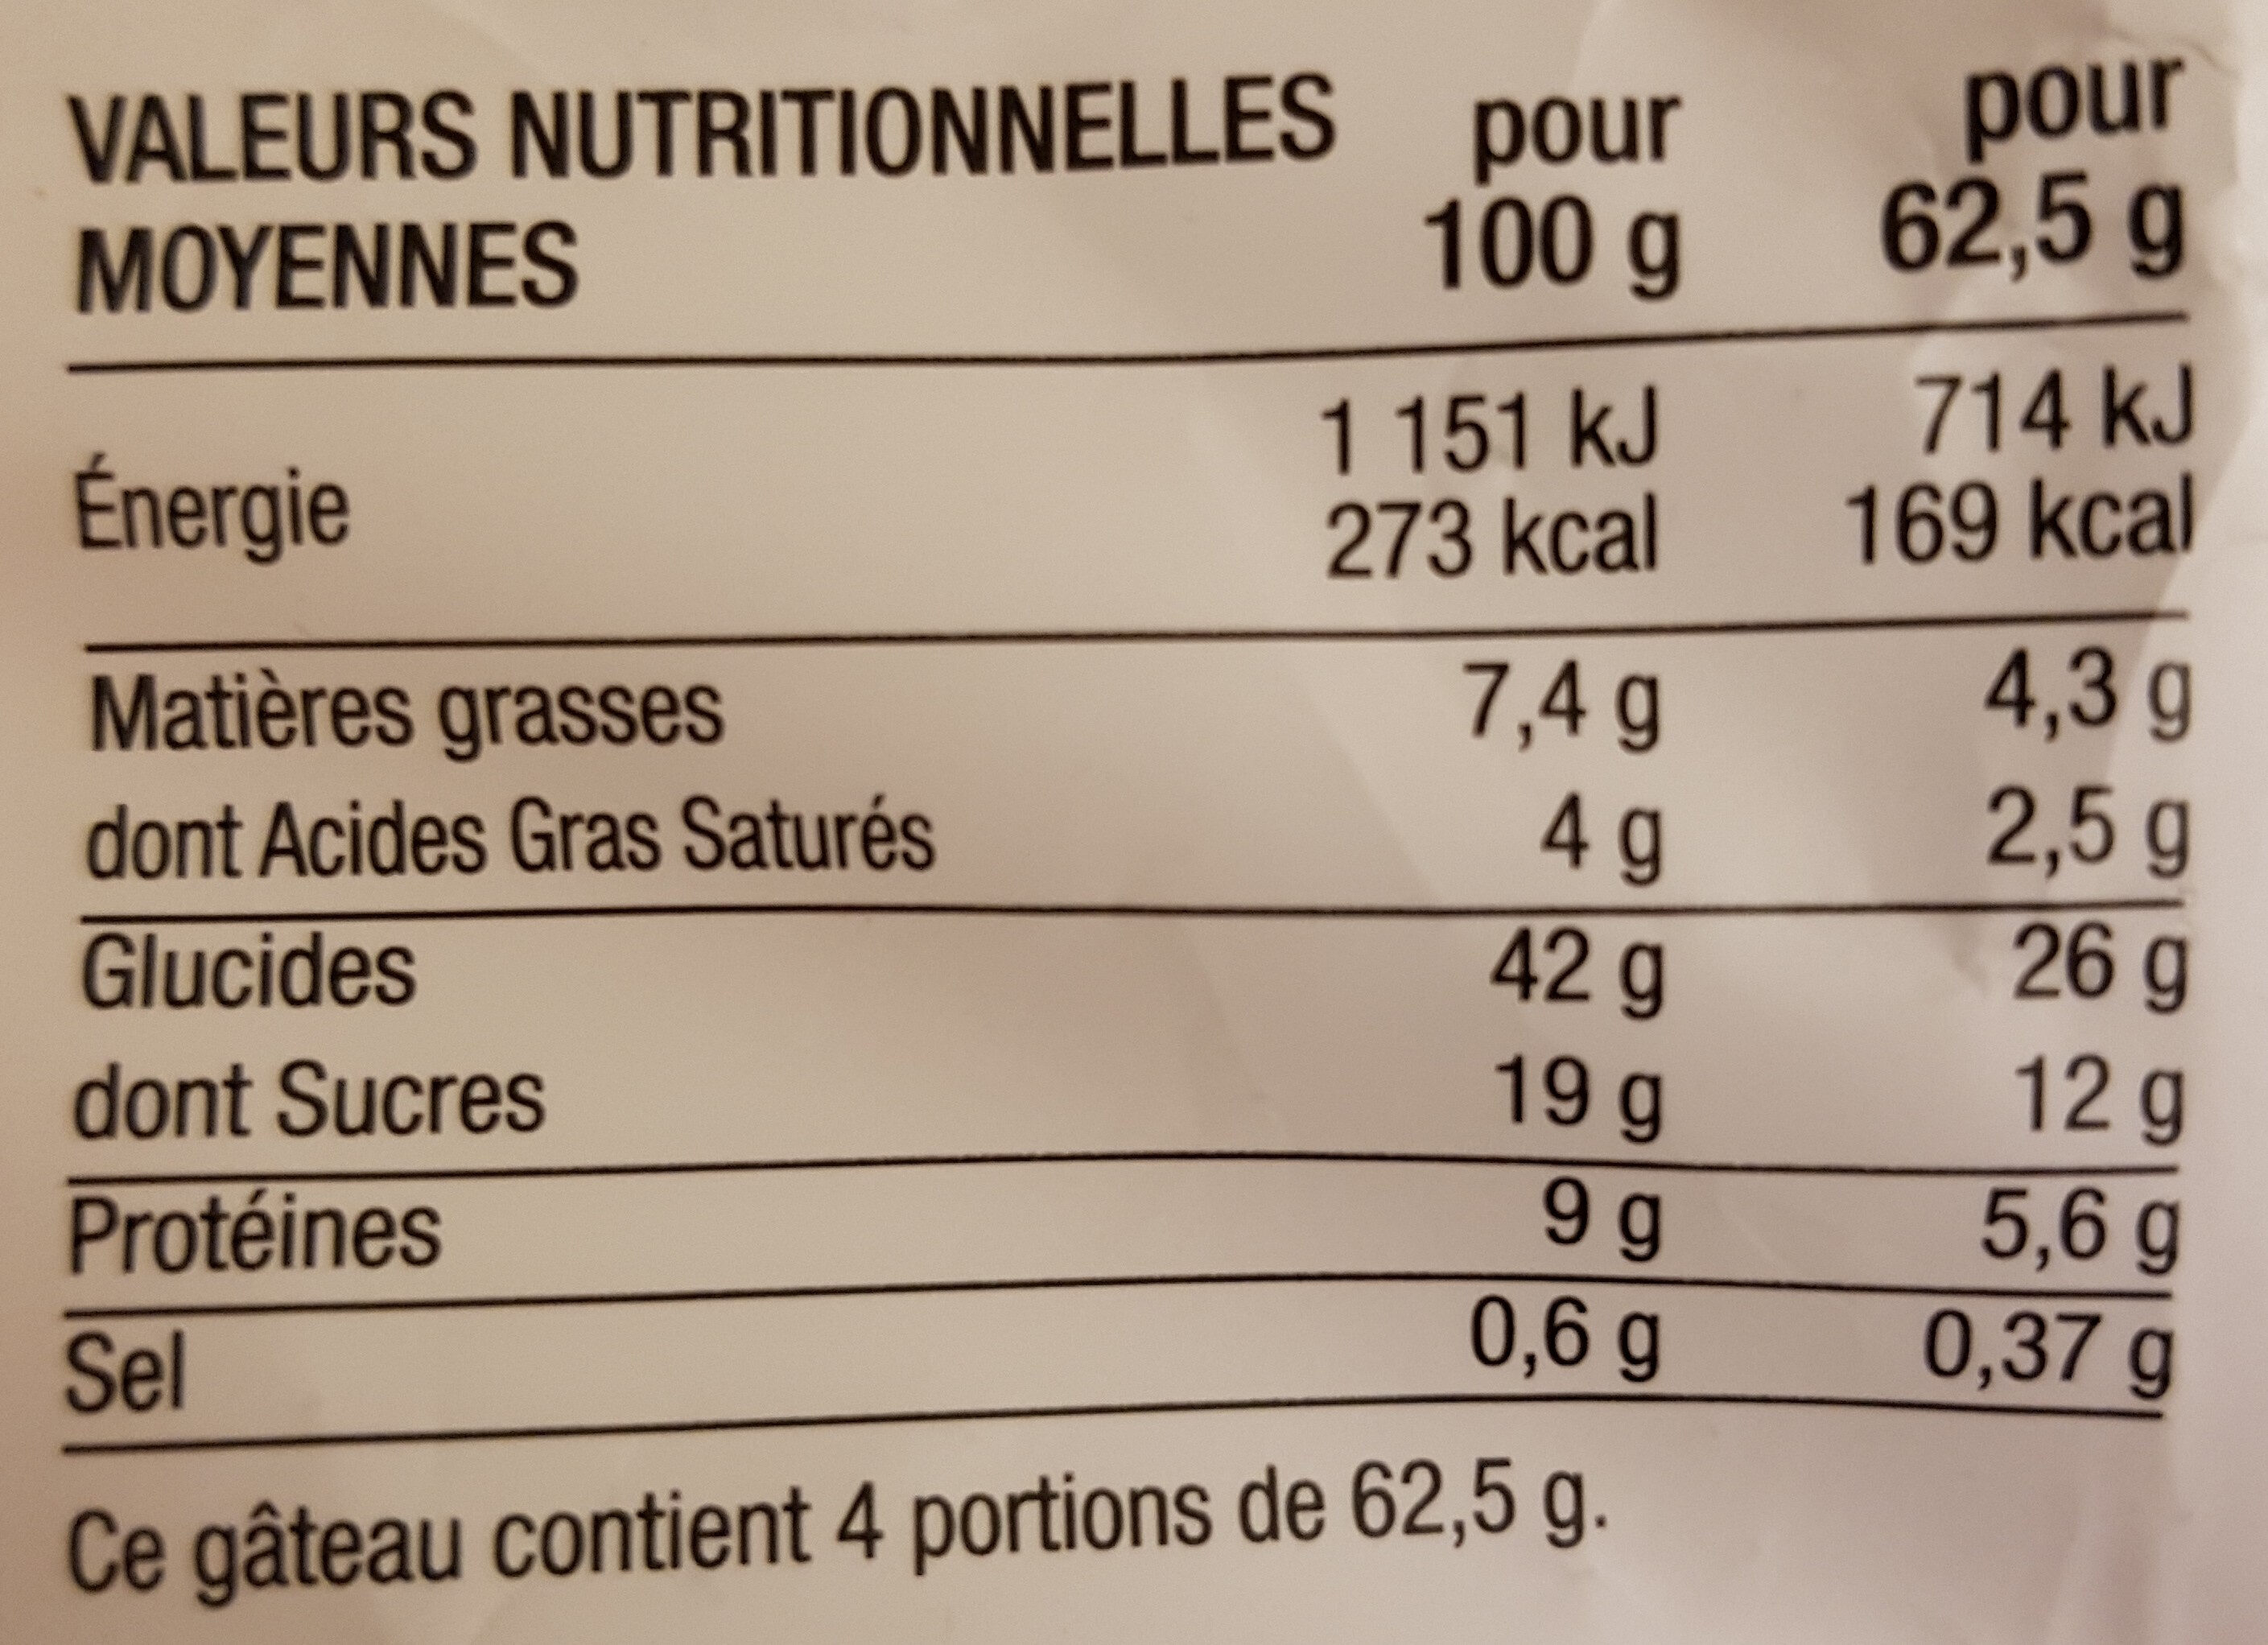 Le tourteau - Nutrition facts - fr